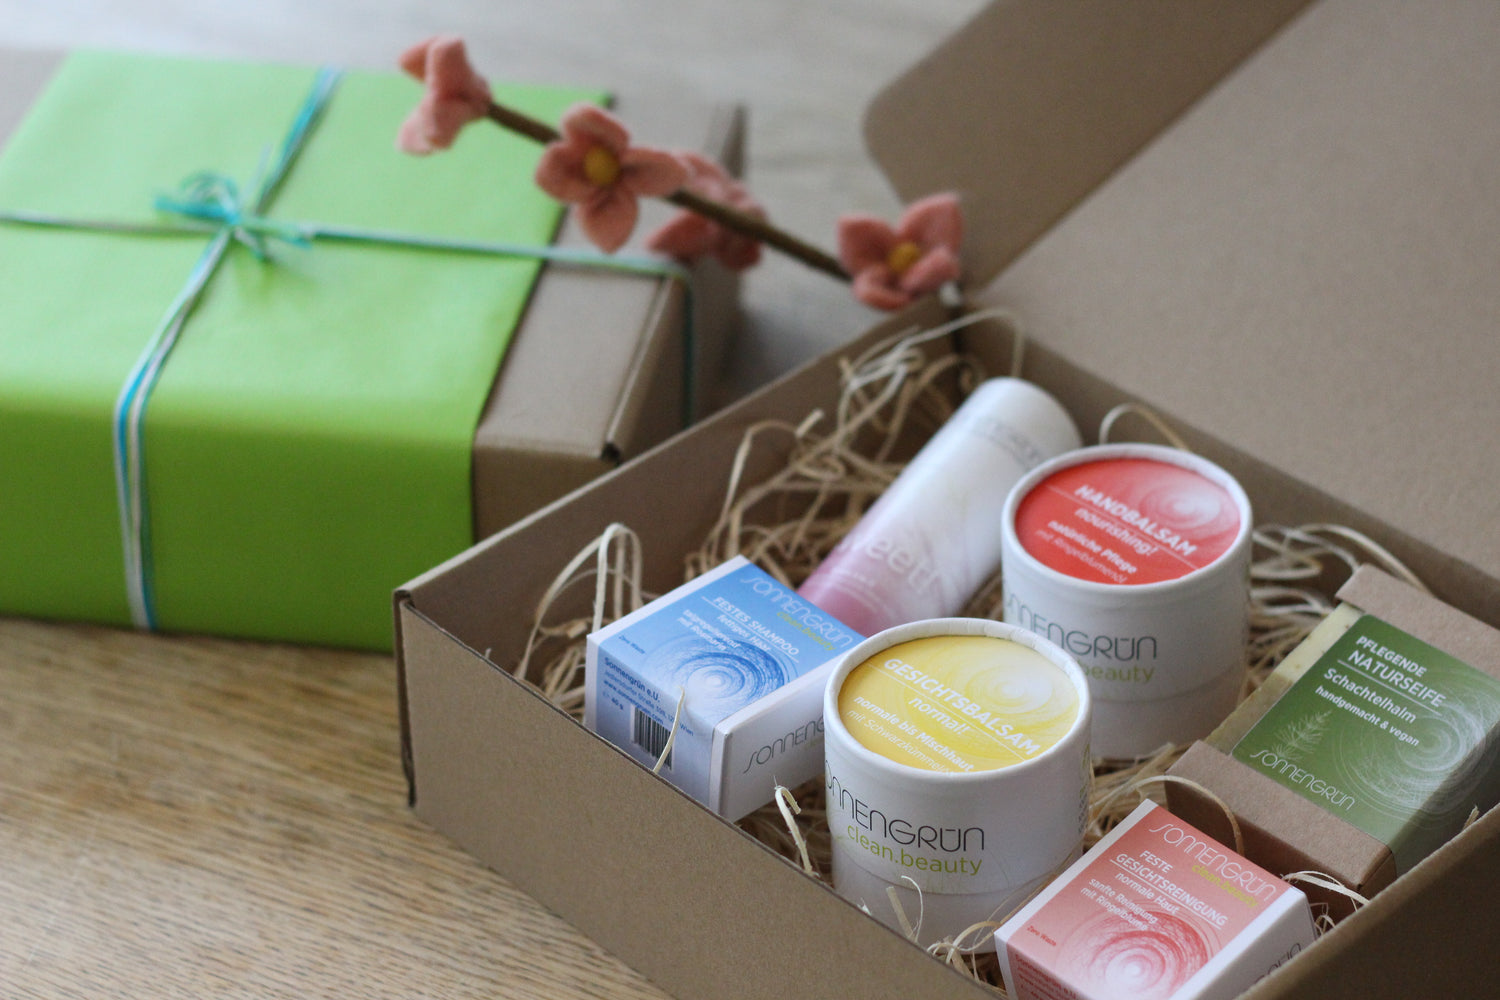 Auf dem Foto sieht man die Produkte von Sonnengrün mit ihren bunten Etiketten in einem hellbraunen Karton mit Holzwolle. Daneben sieht man ein mit grünem Geschenkpapier verpacktes Geschenk, dekoriert mit einem rosa blühendem Zweit.